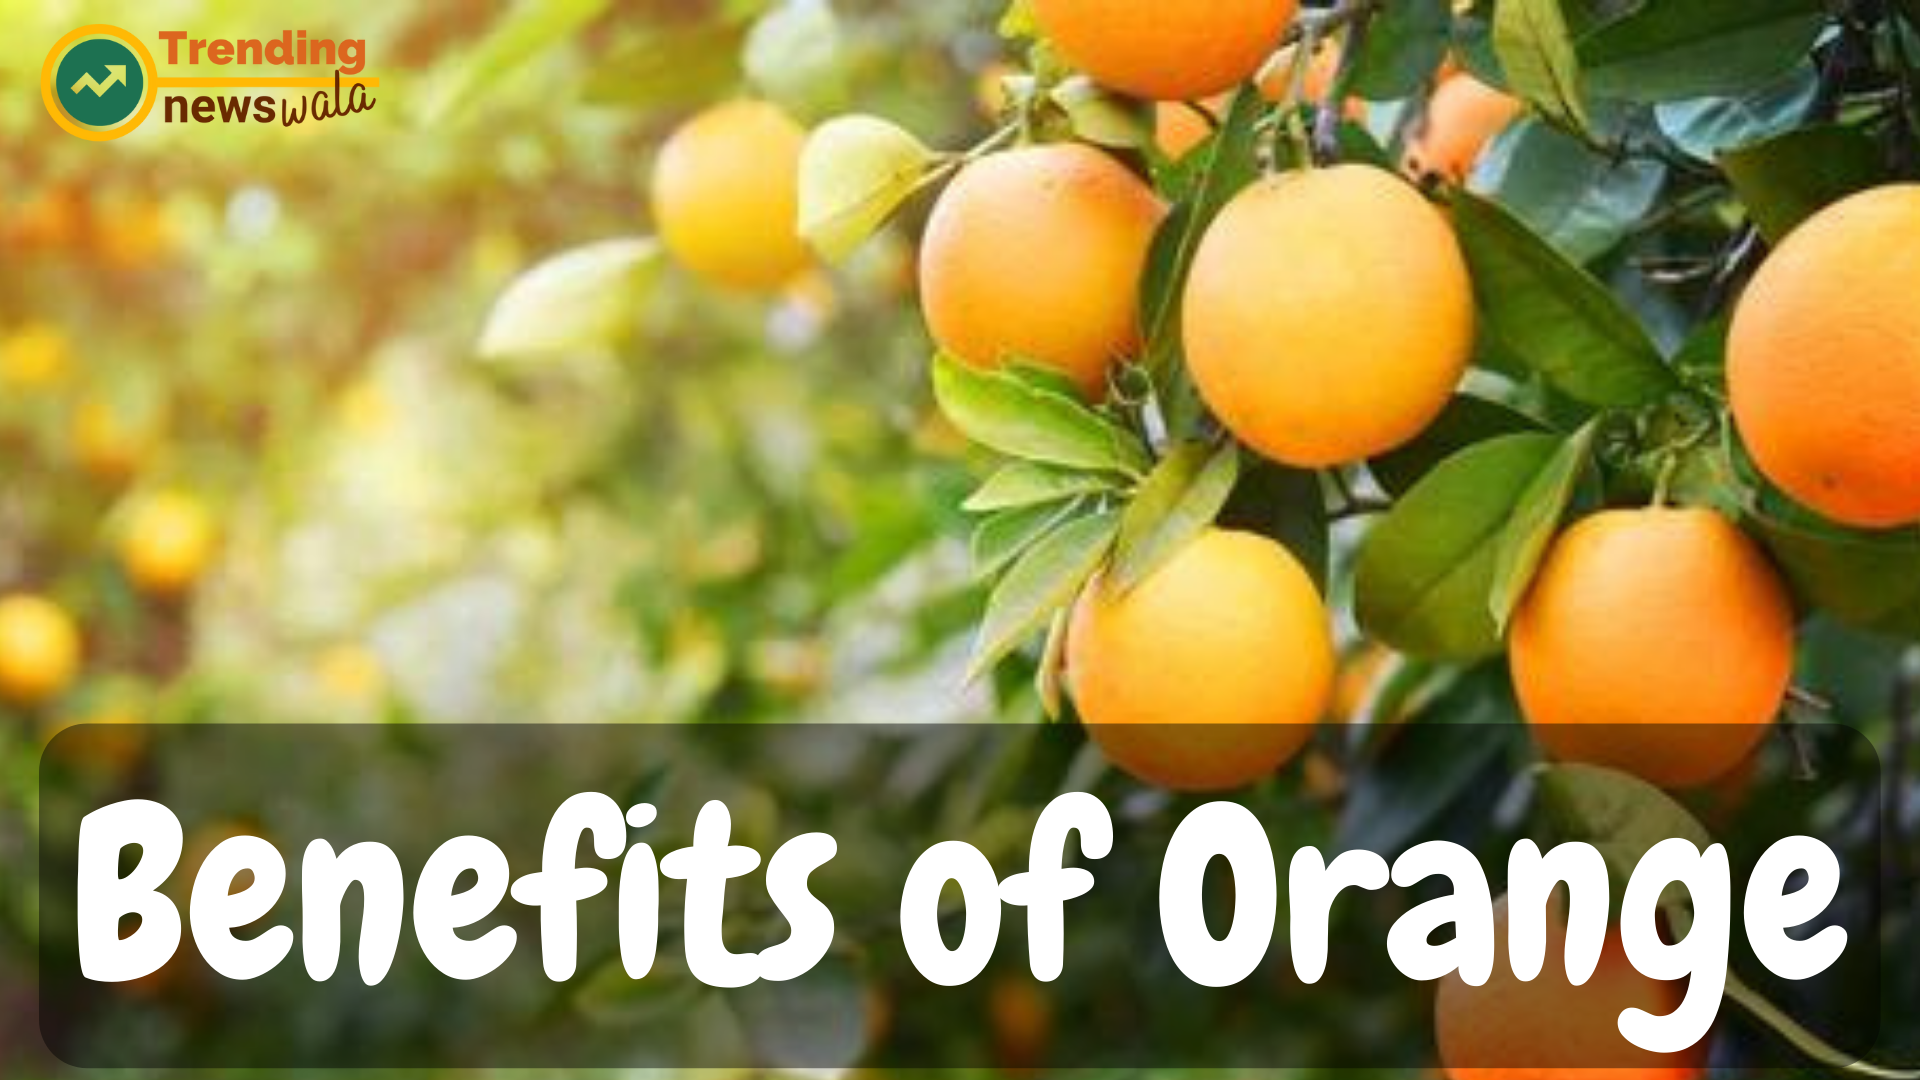 10 Benefits of Orange